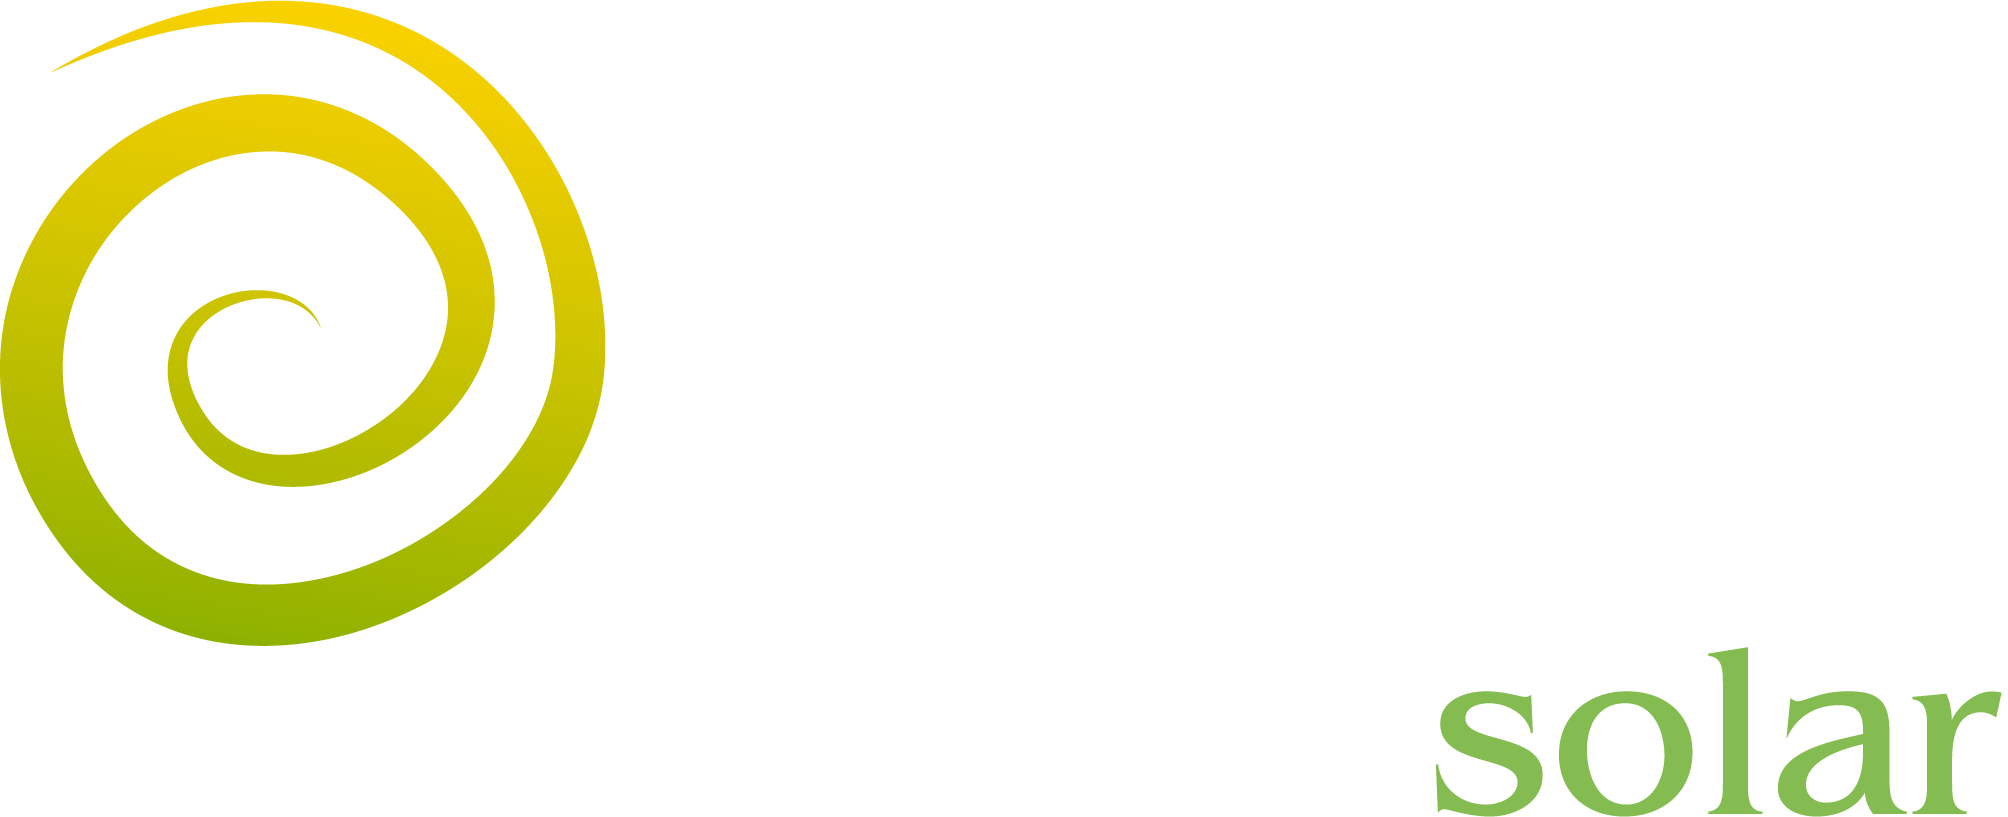 Origen Solar